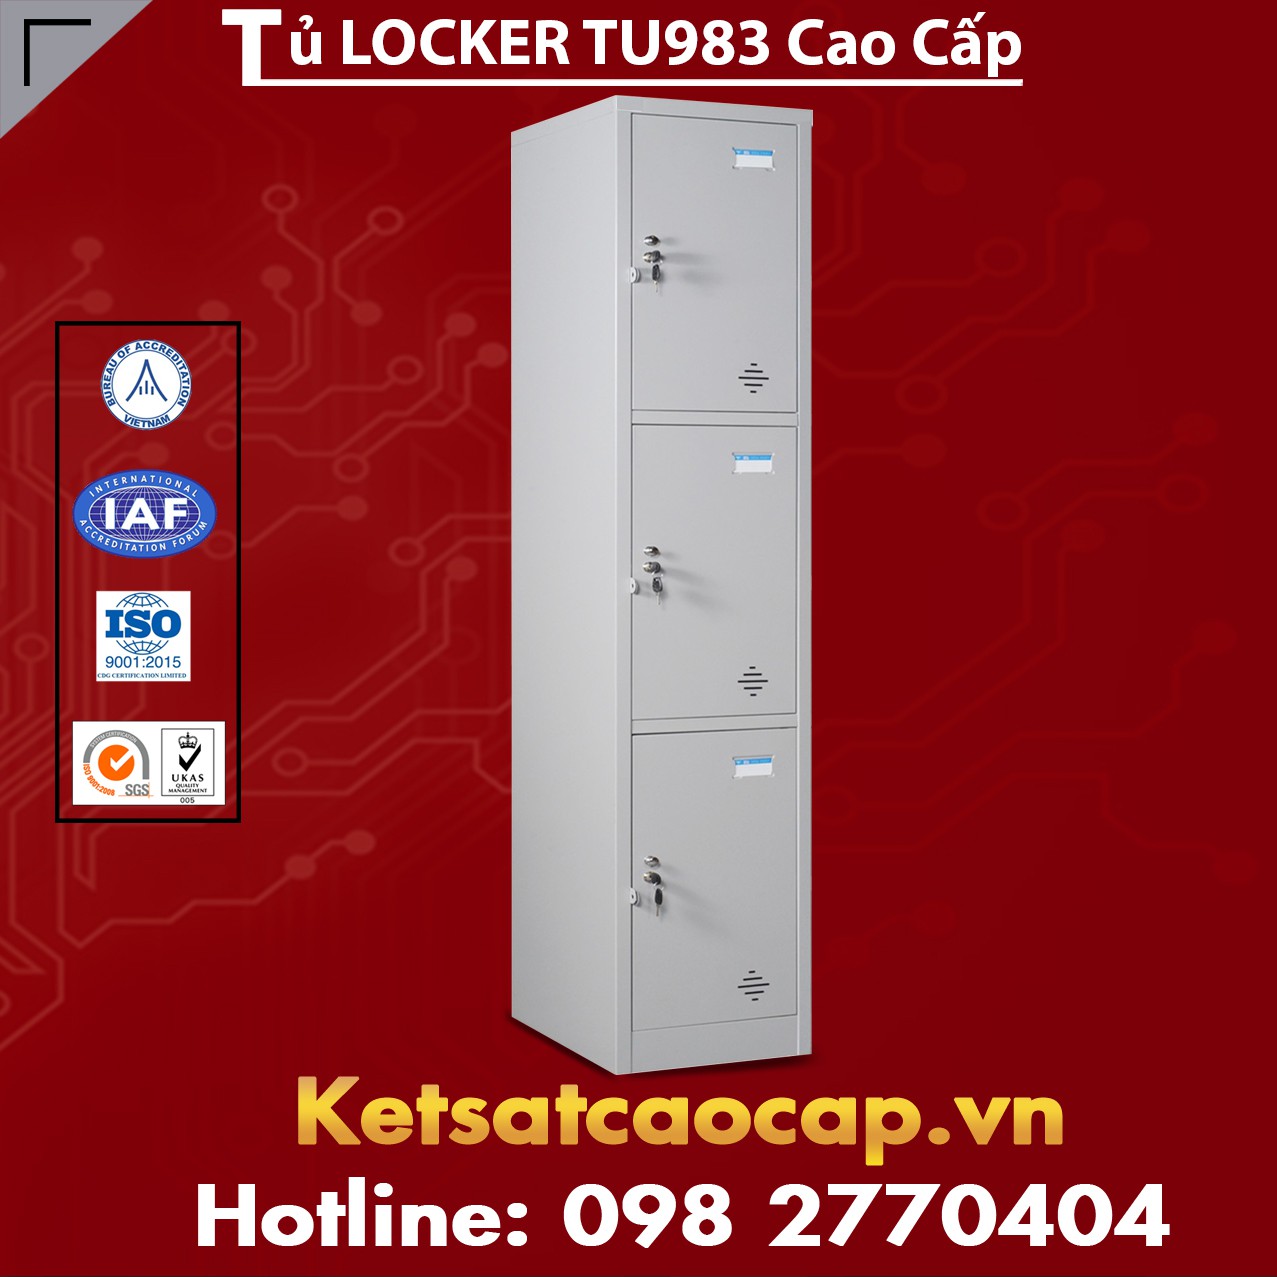 Tủ Locker TU983